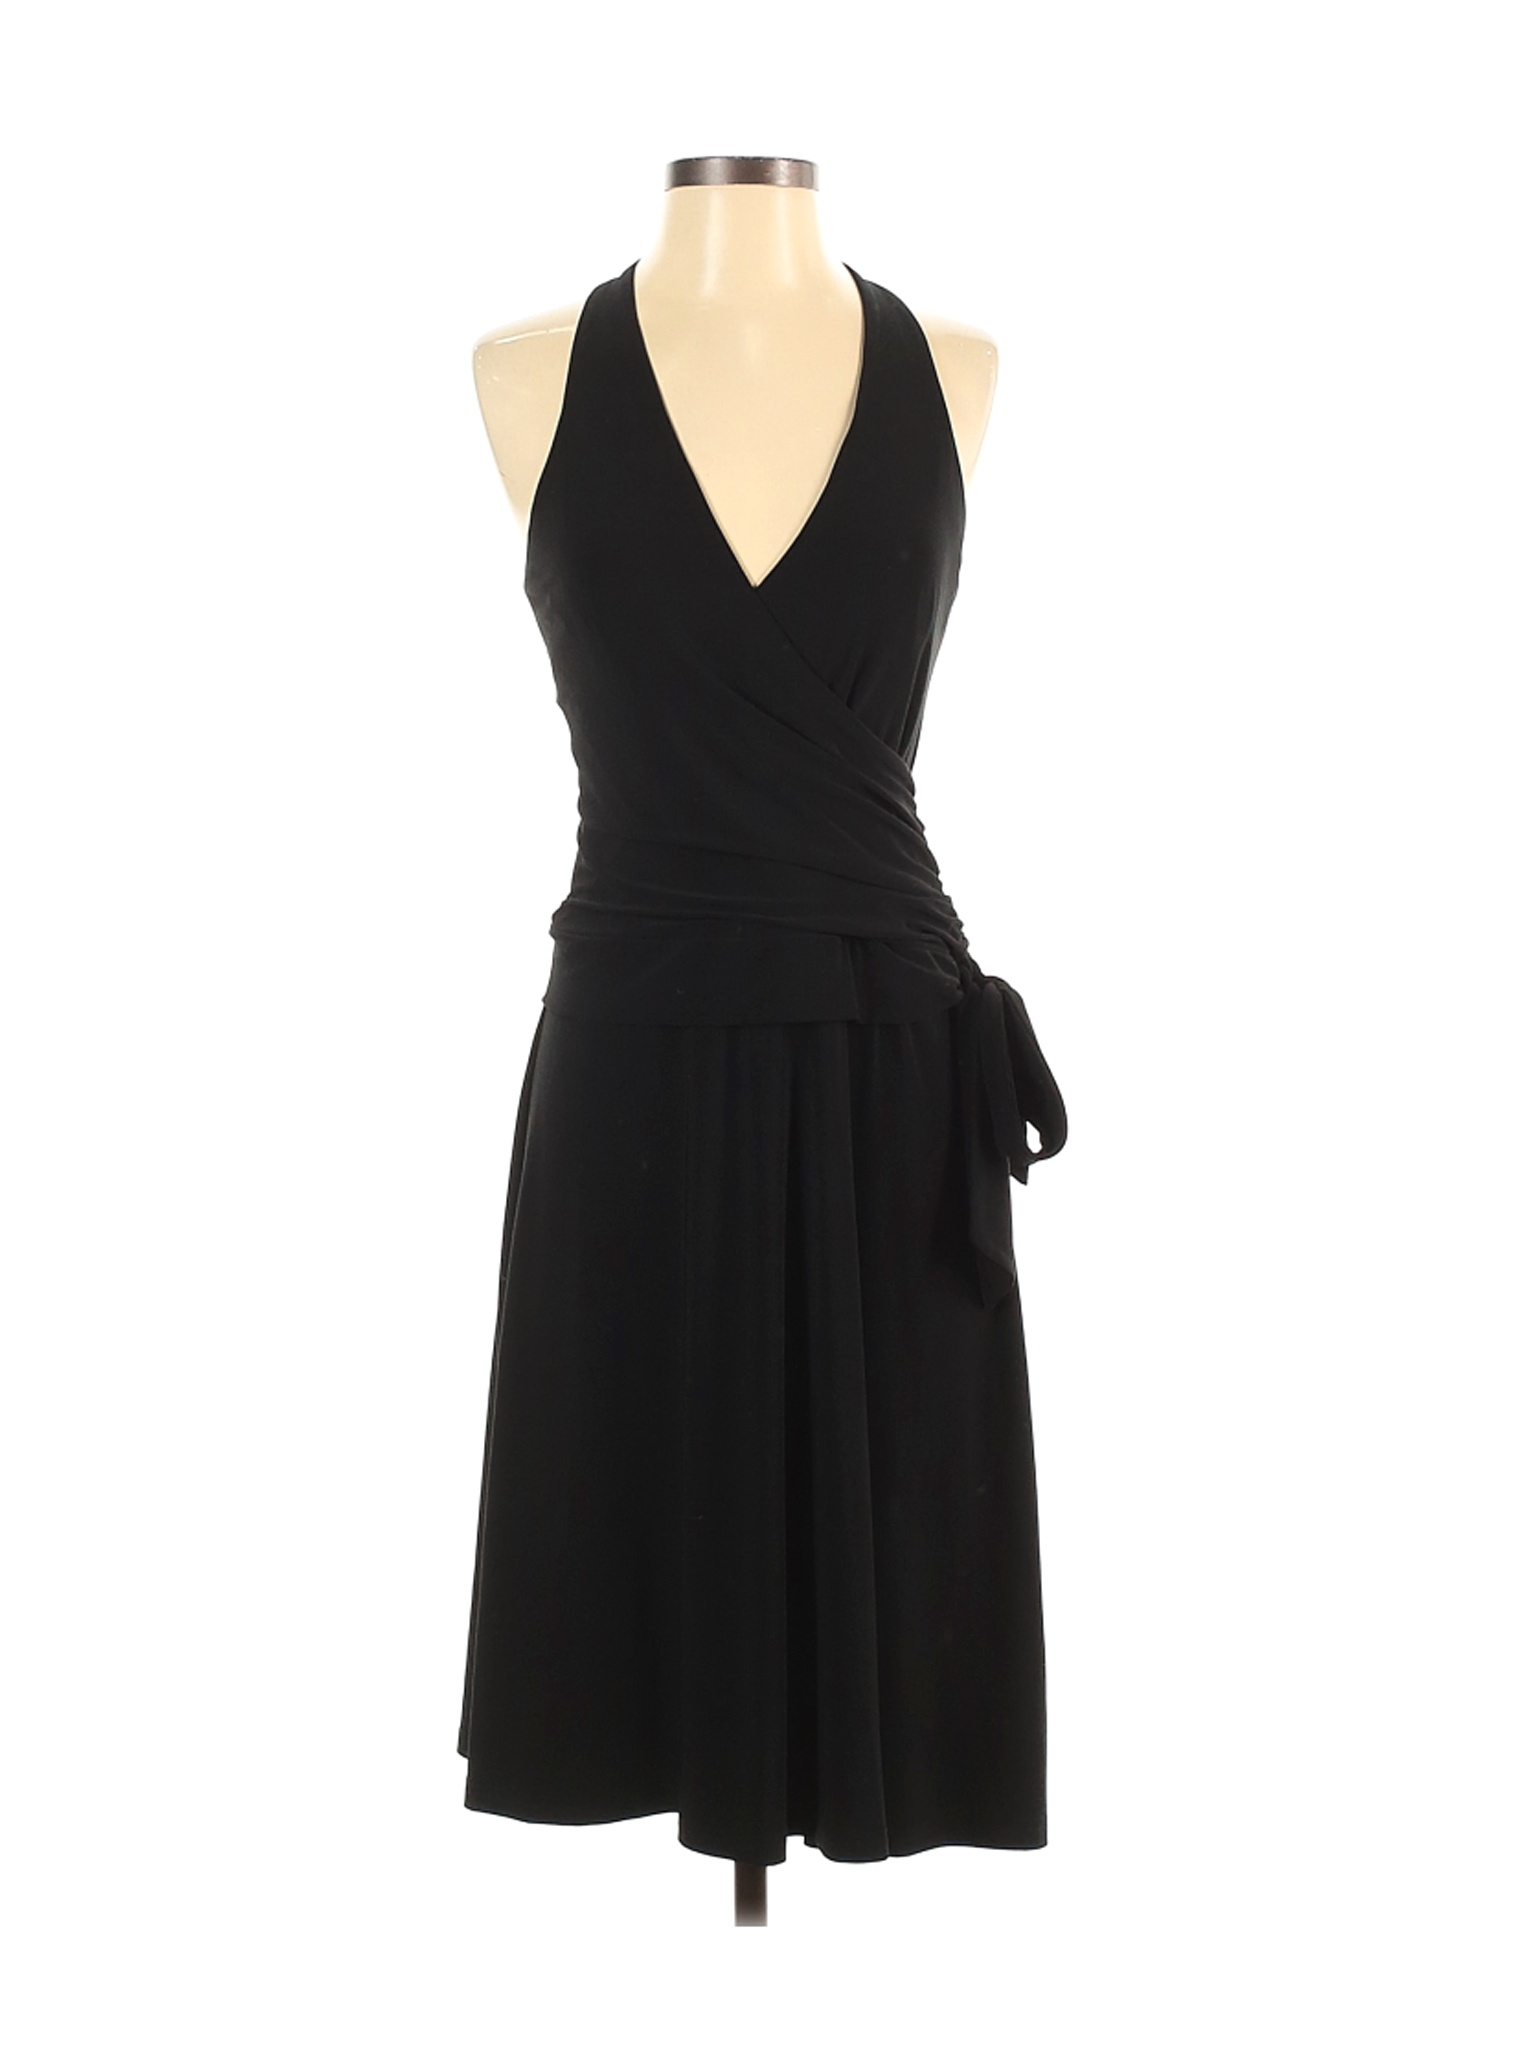 Jones New York Women Black Casual Dress 4 | eBay